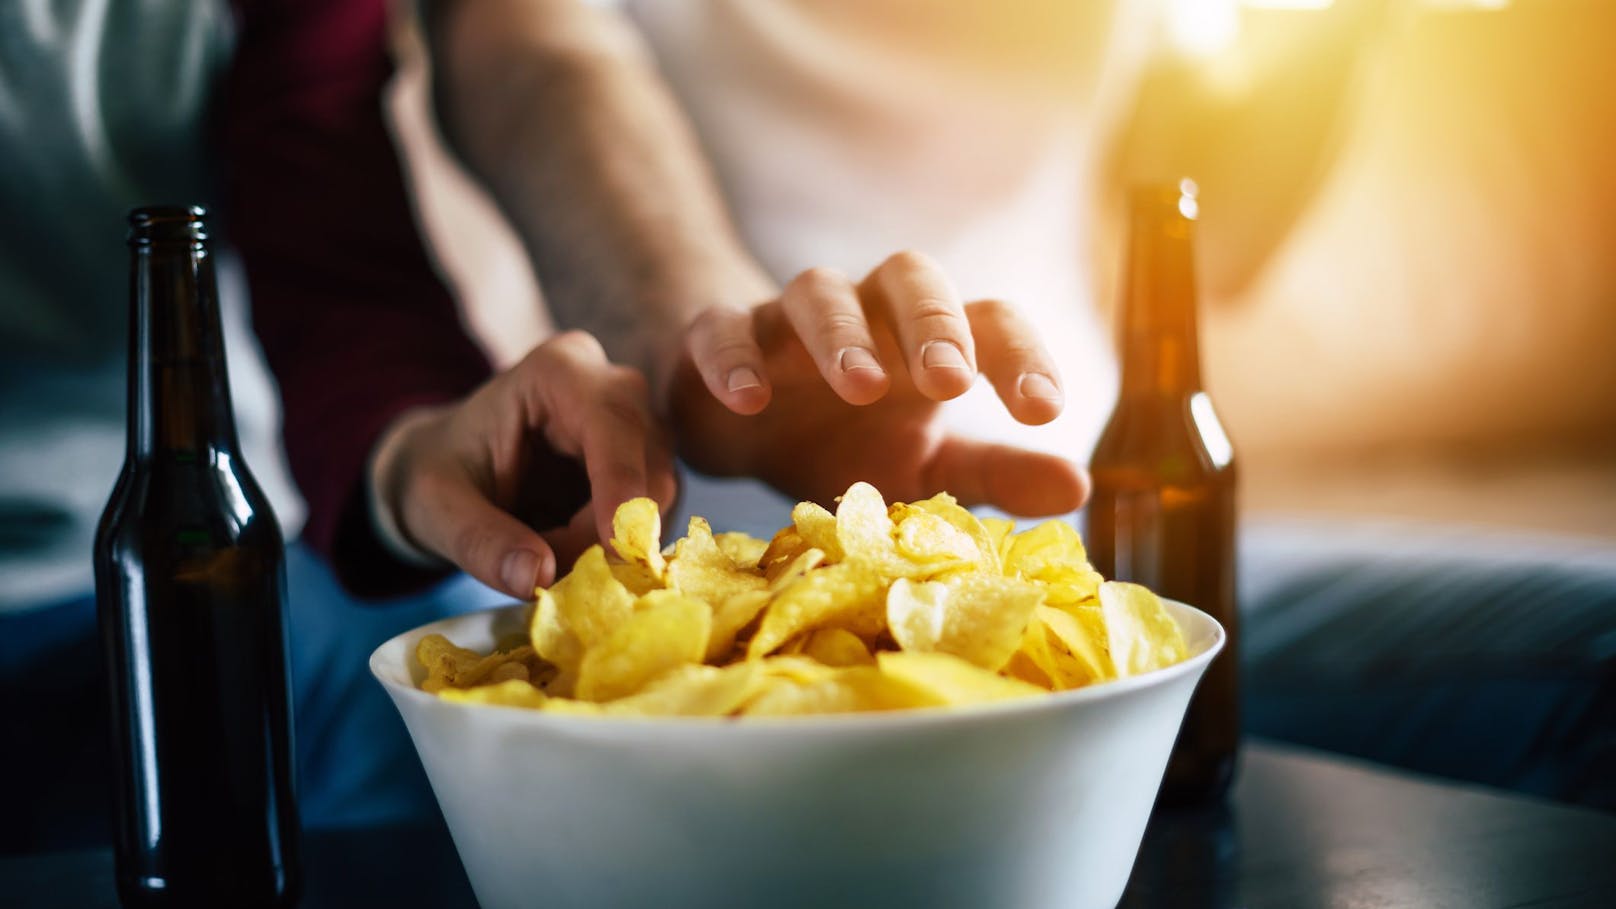 Studien warnen vor Chips – "dann essen Sie halt keine"